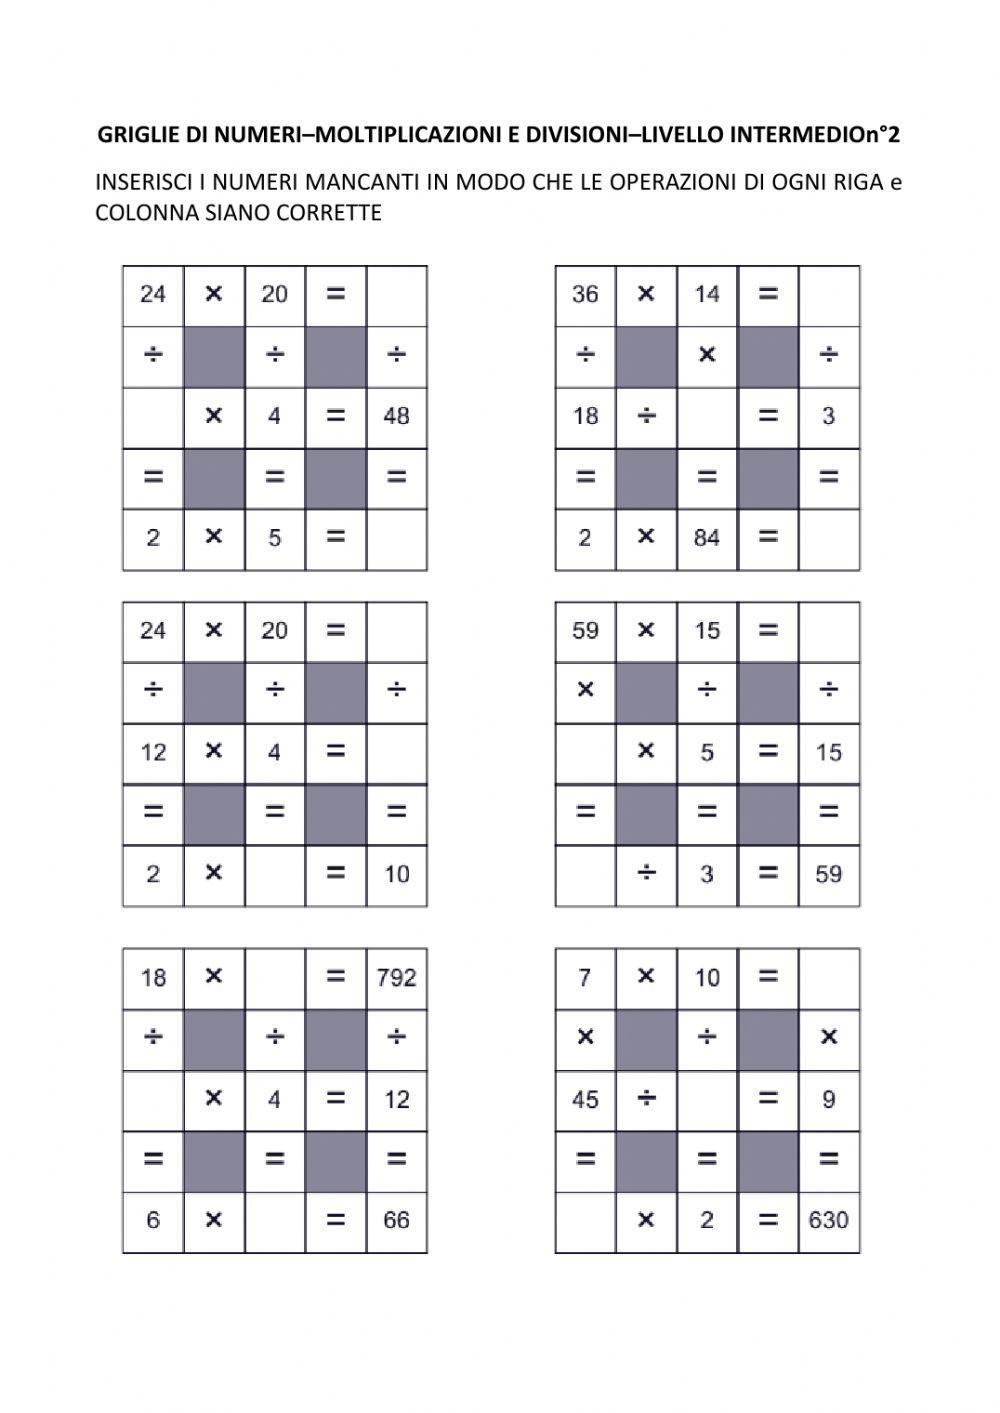 Griglie di numeri - Moltiplicazioni e Divisioni - Livello intermedio n°2